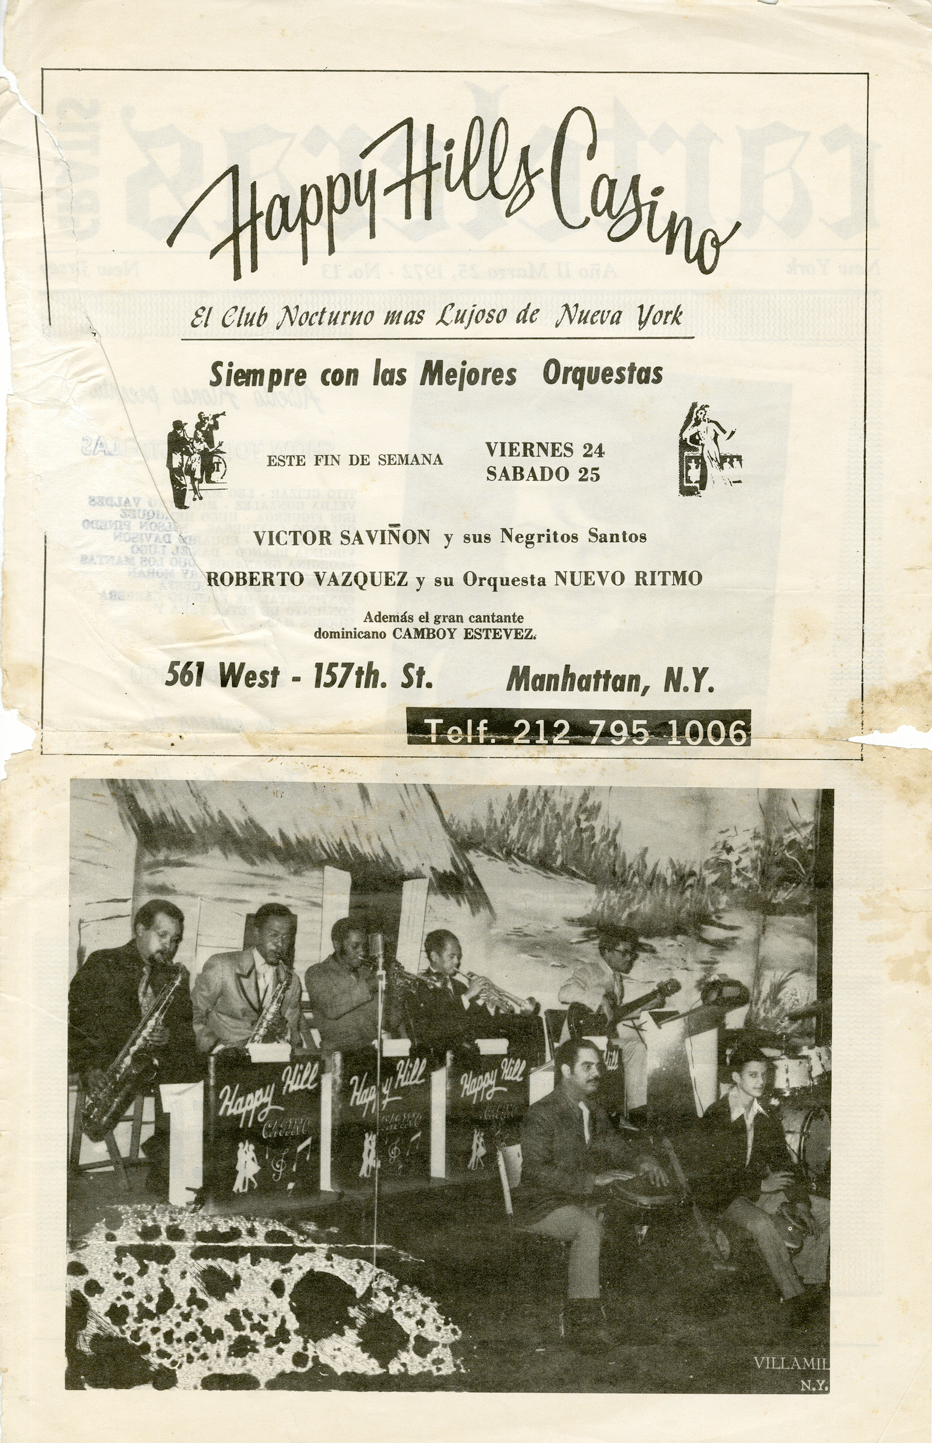 Happy Hills Casino Flyer featuring the Dominican band Víctor Saviñón y sus Negritos Santos with Dominican singer Camboy Estevez, ca. 1970s